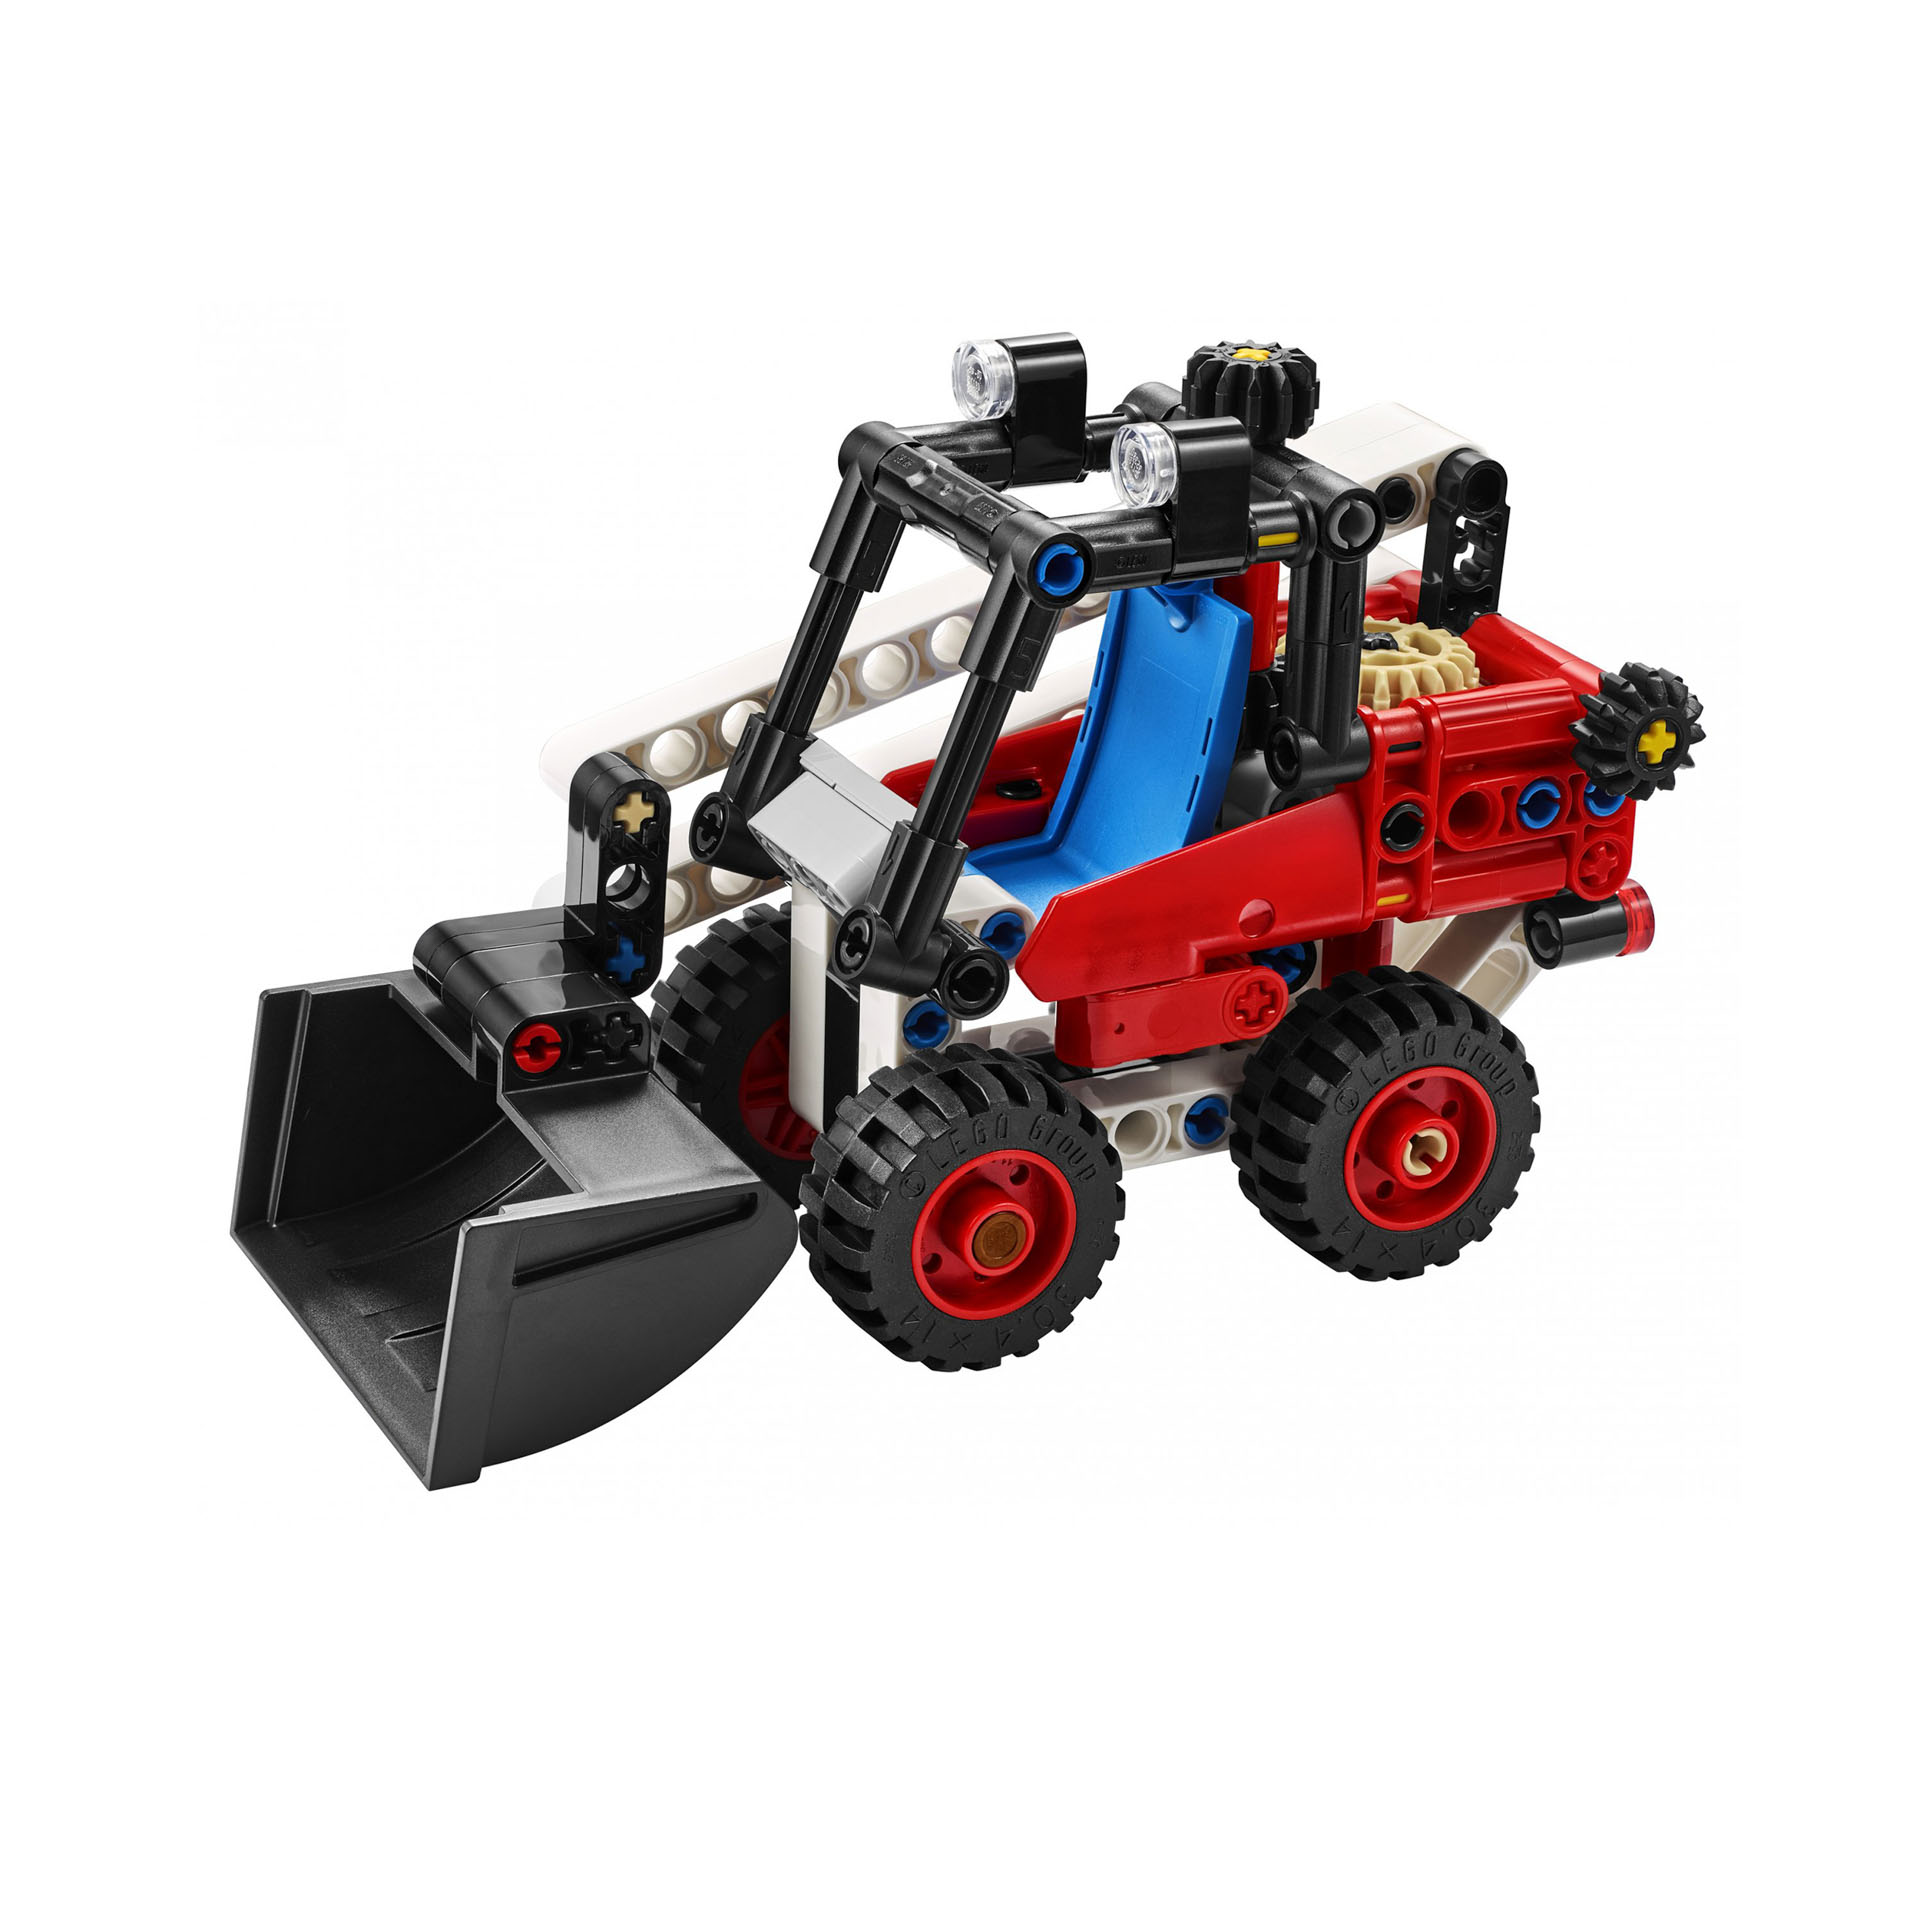 LEGO Technic Bulldozer Kit 2 in 1 da Escavatore a Hot Rod, Ruspa e Auto da Costr 42116, , large